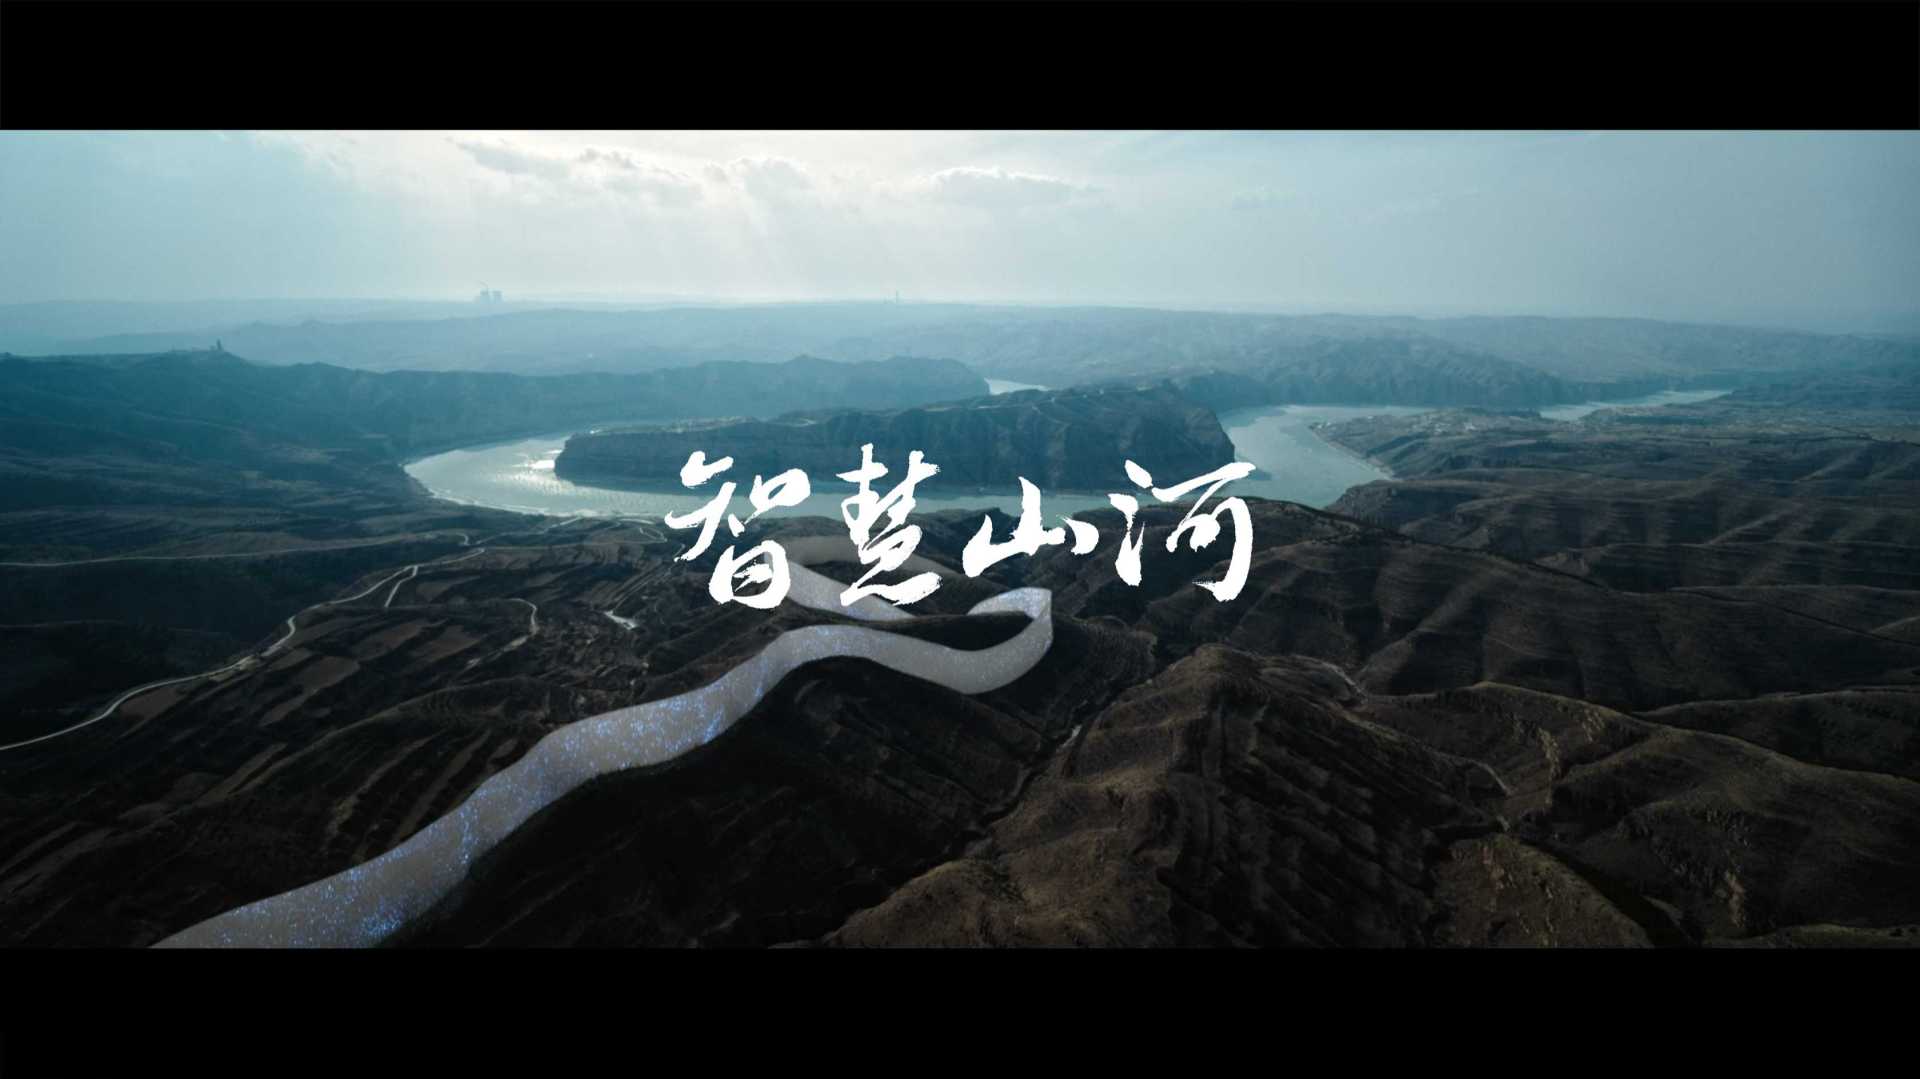 《智慧山河》联想智慧中国品牌片